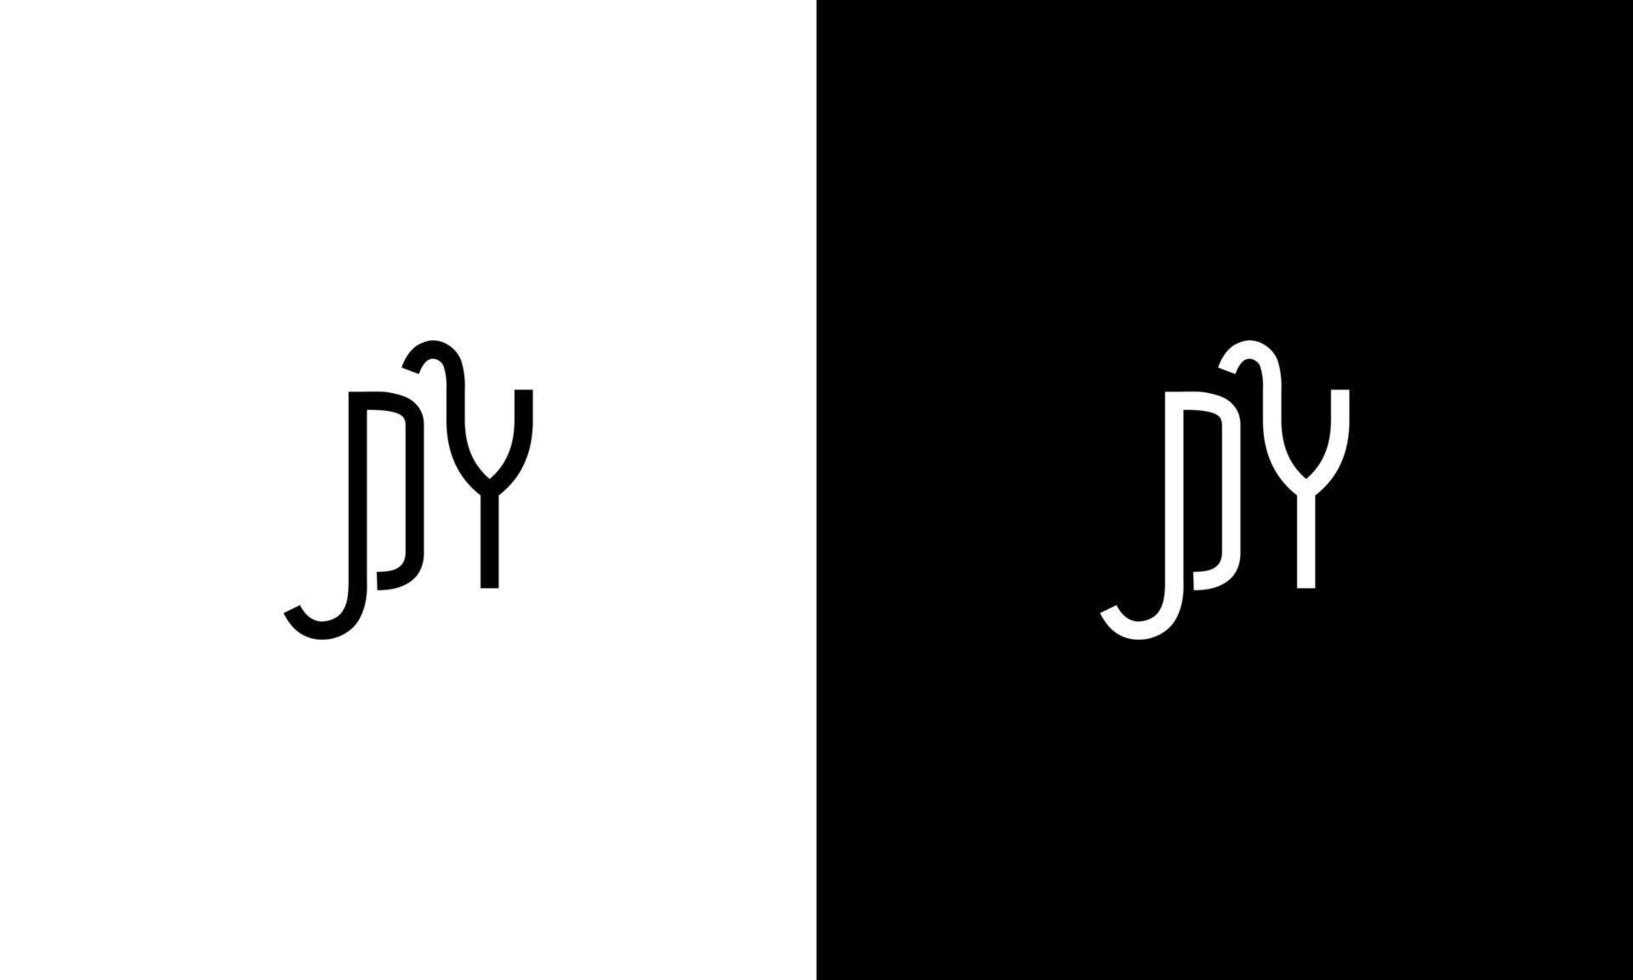 diseño de logotipo dy. diseño del logotipo de la letra dy. diseño de icono de logotipo inicial dy en plantilla de vector libre de colores blanco y negro.